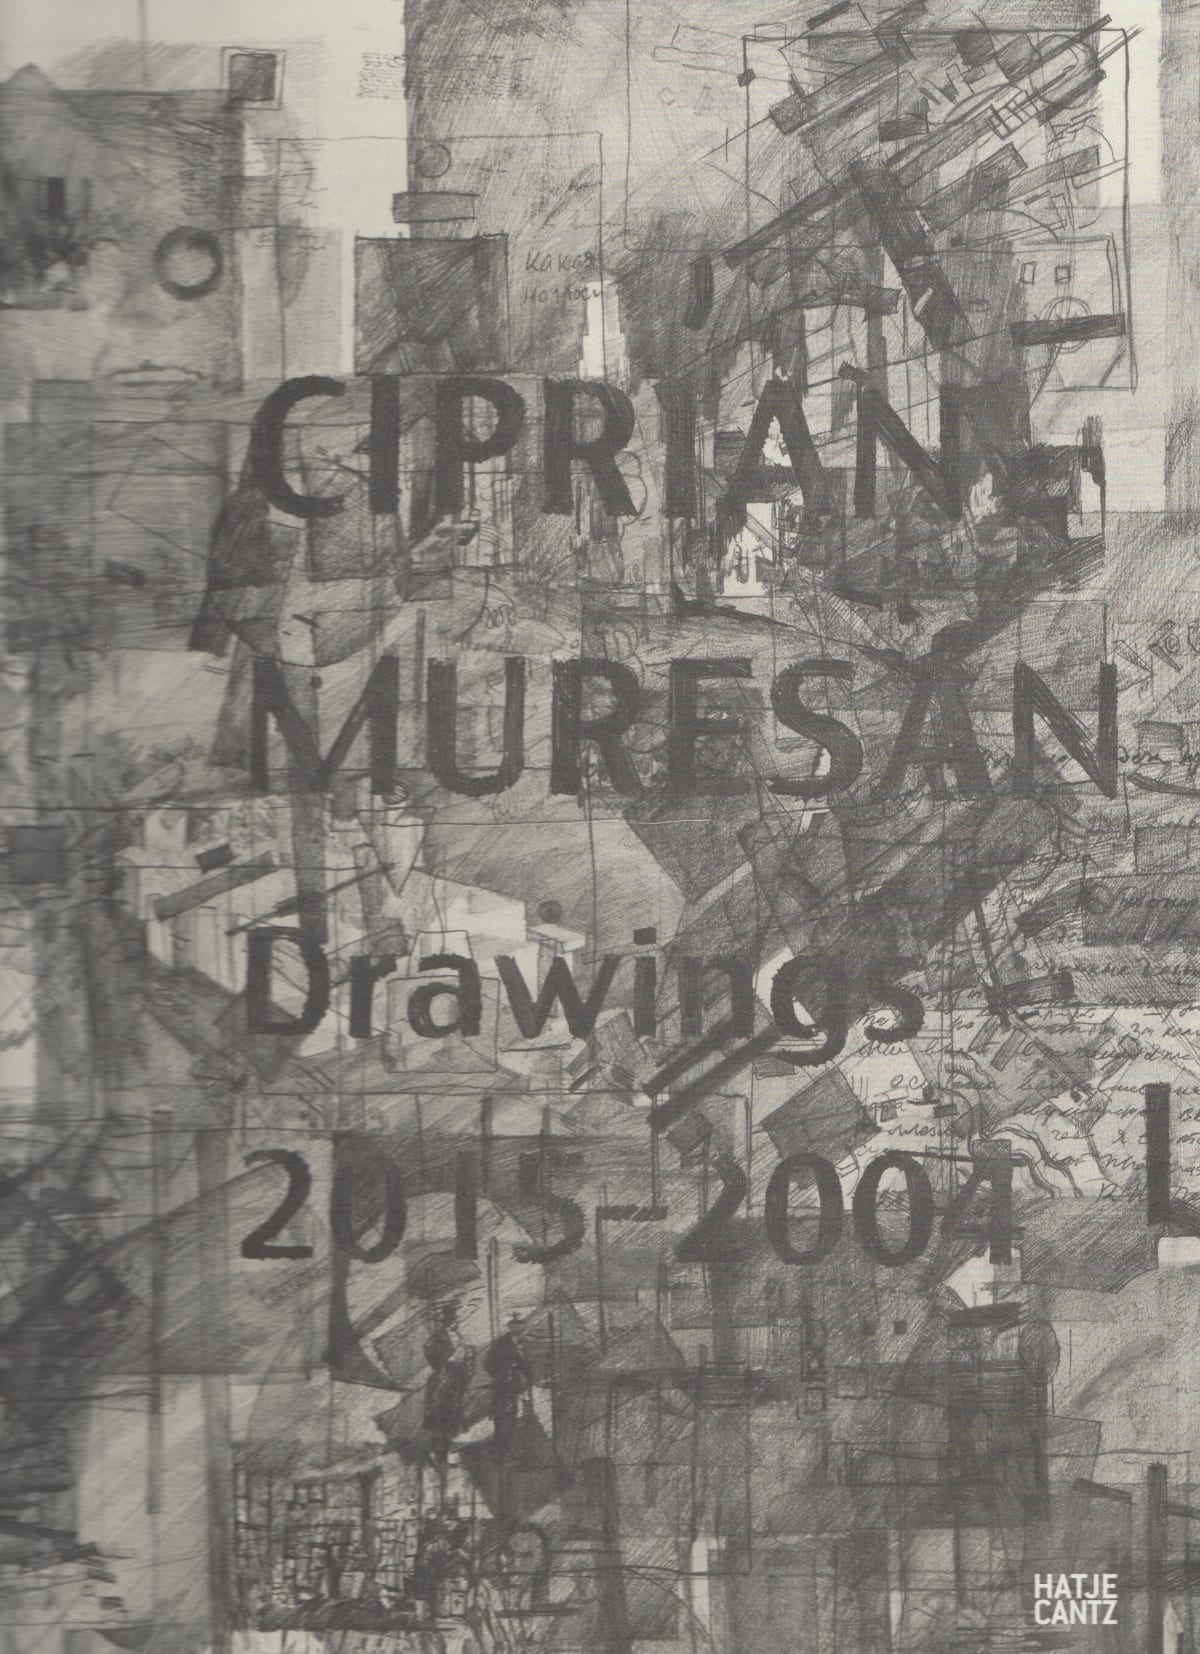 Ciprian Muresan - Drawings 2015 - 2004